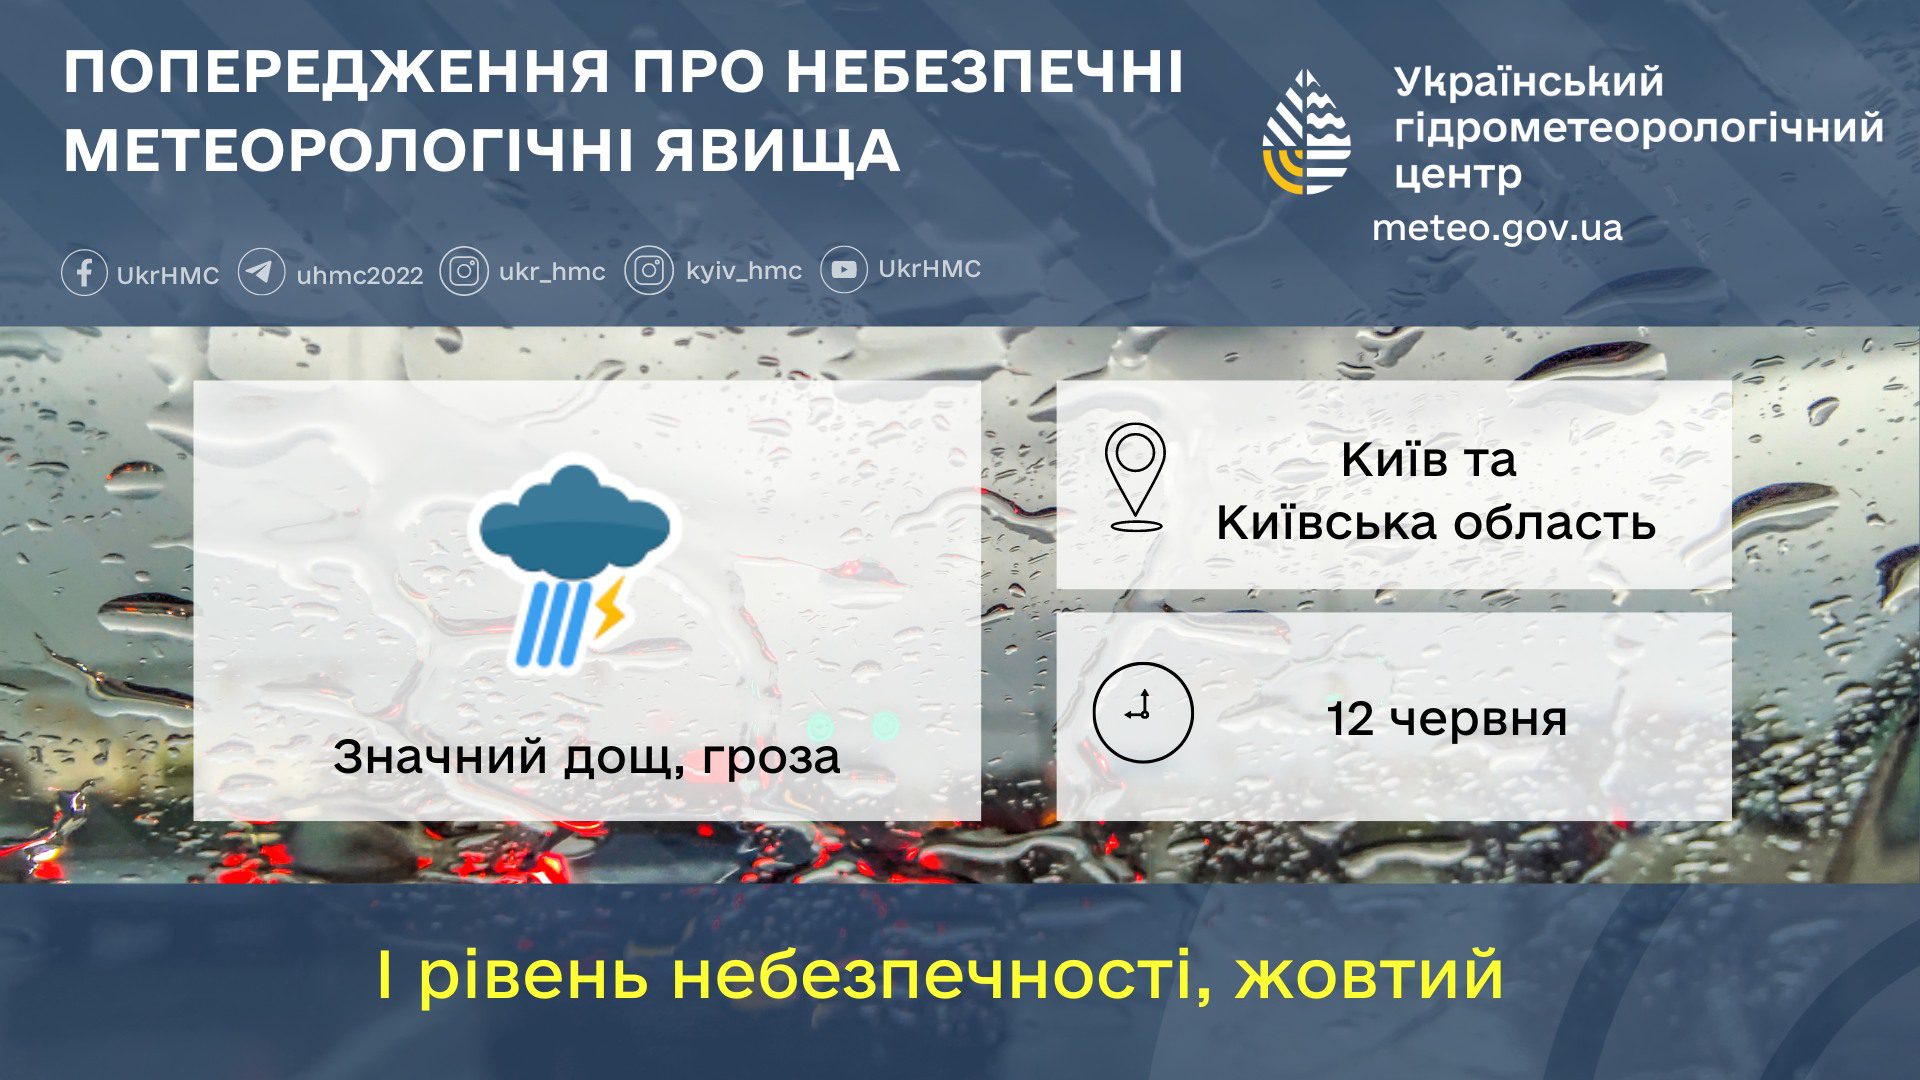 Грозові дощі: небезпечна погода прогнозується на 12 червня у столиці й на Київщині